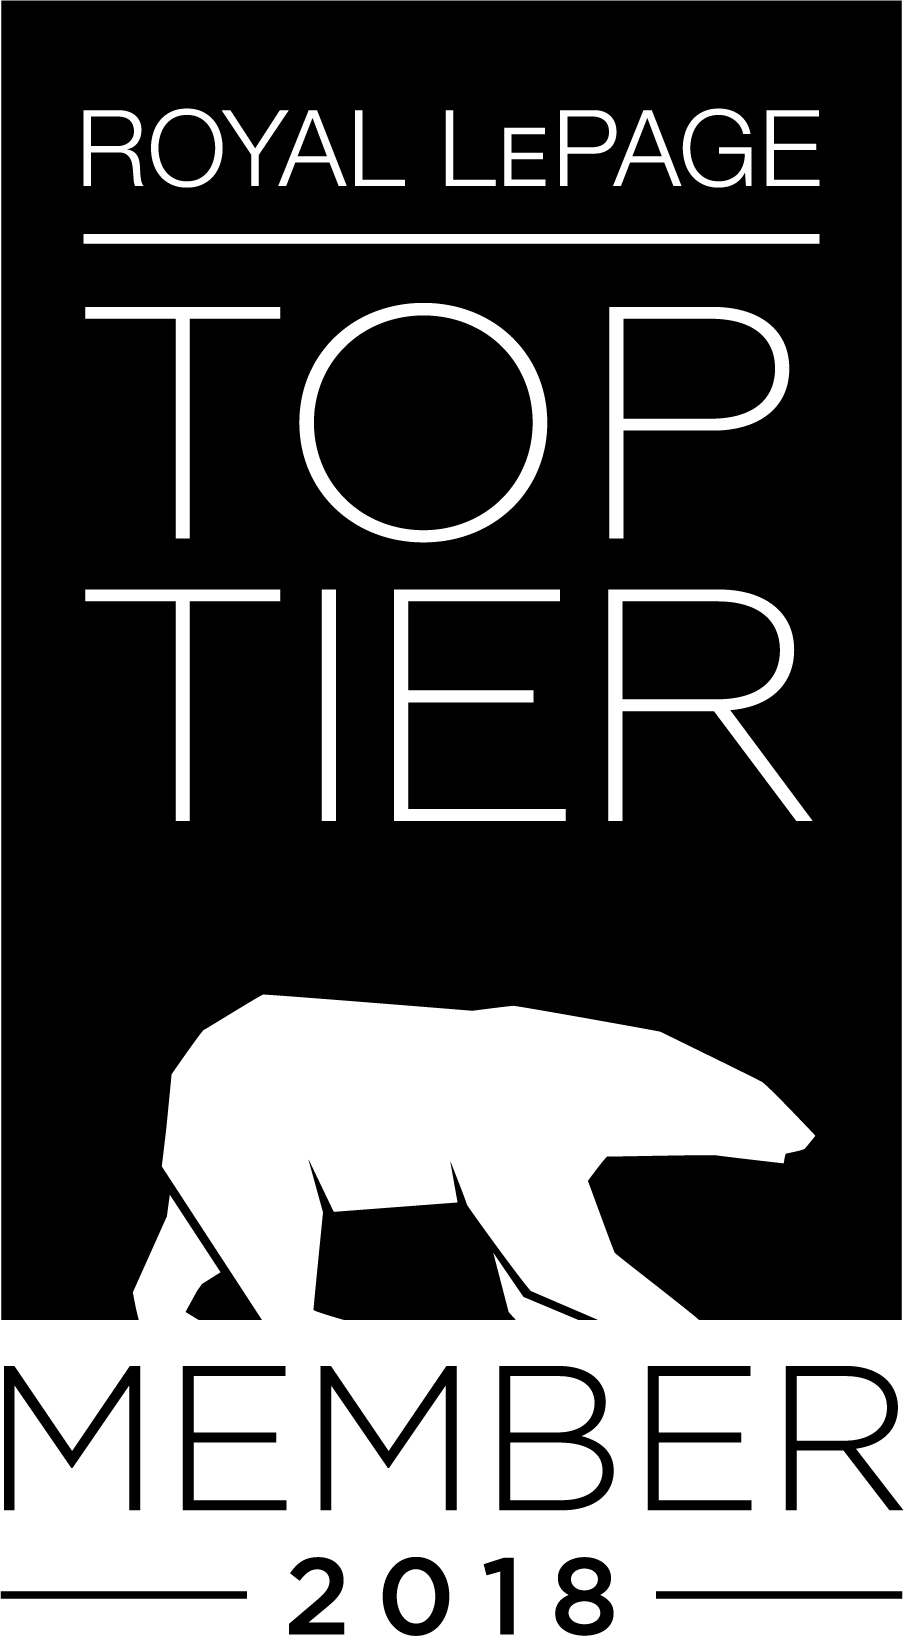 RLP-TopTier-Member_2018-EN-1Colour.jpg